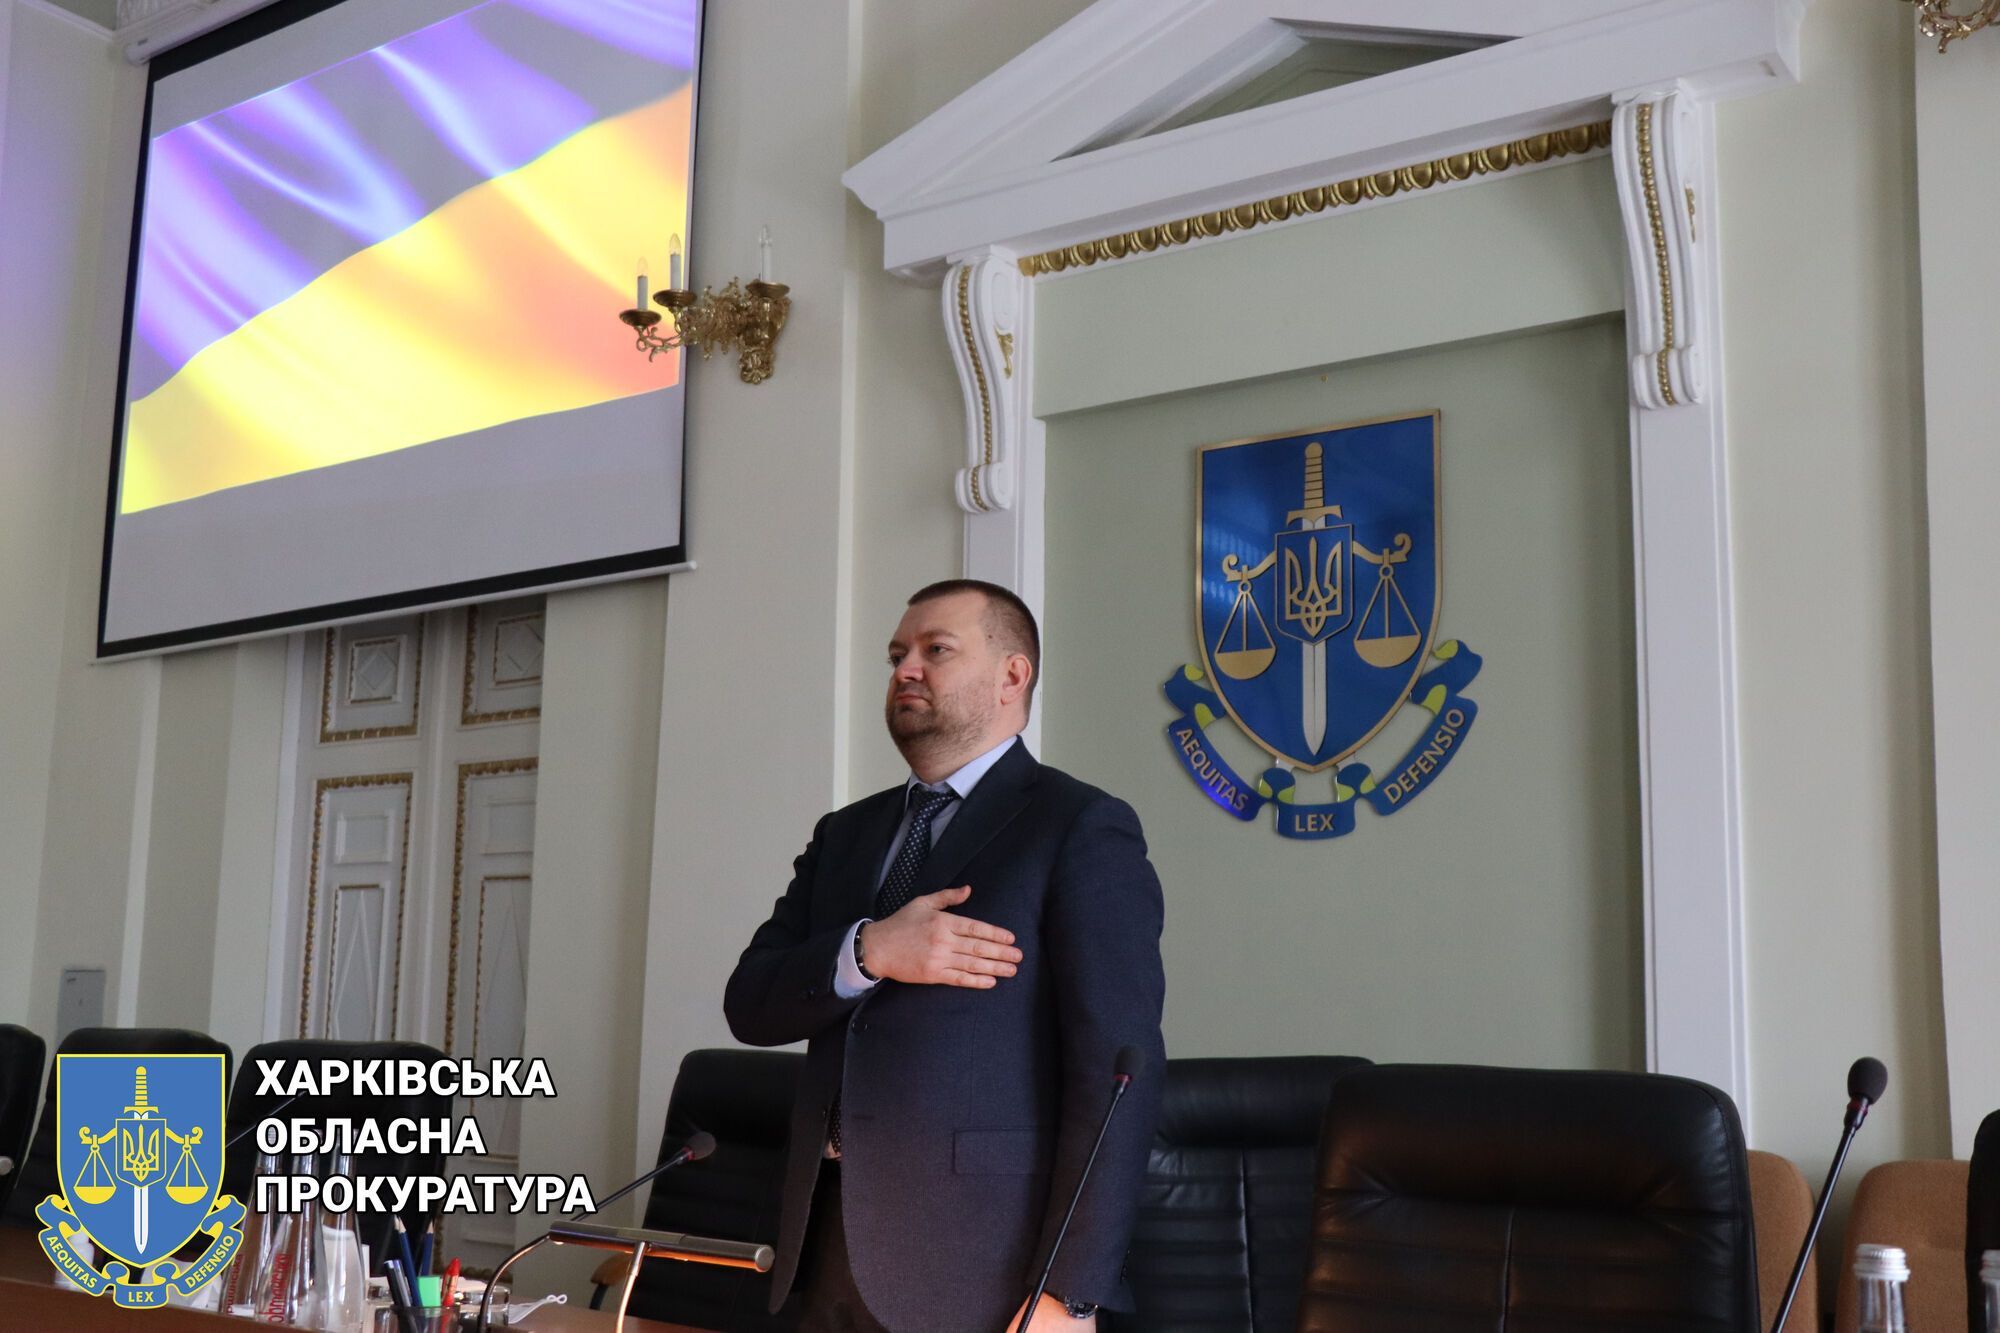 #UAразом — у Харківській обласній прокуратурі відзначили День єднання (ФОТО)